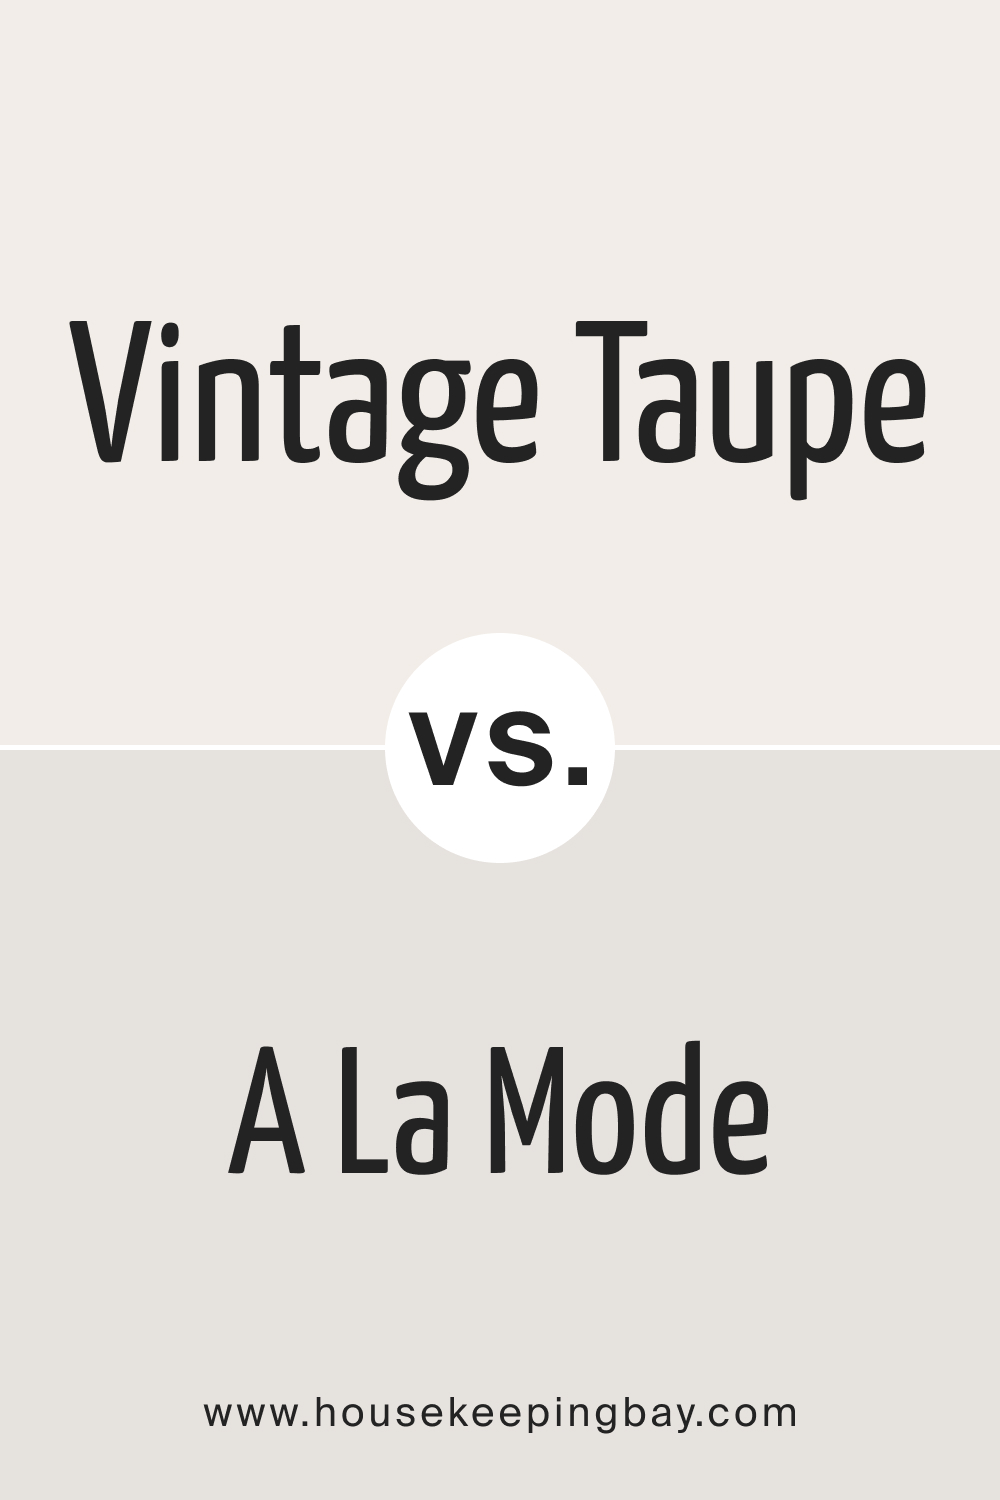 Vintage Taupe 2110 70 vs. BM A La Mode 2109 70